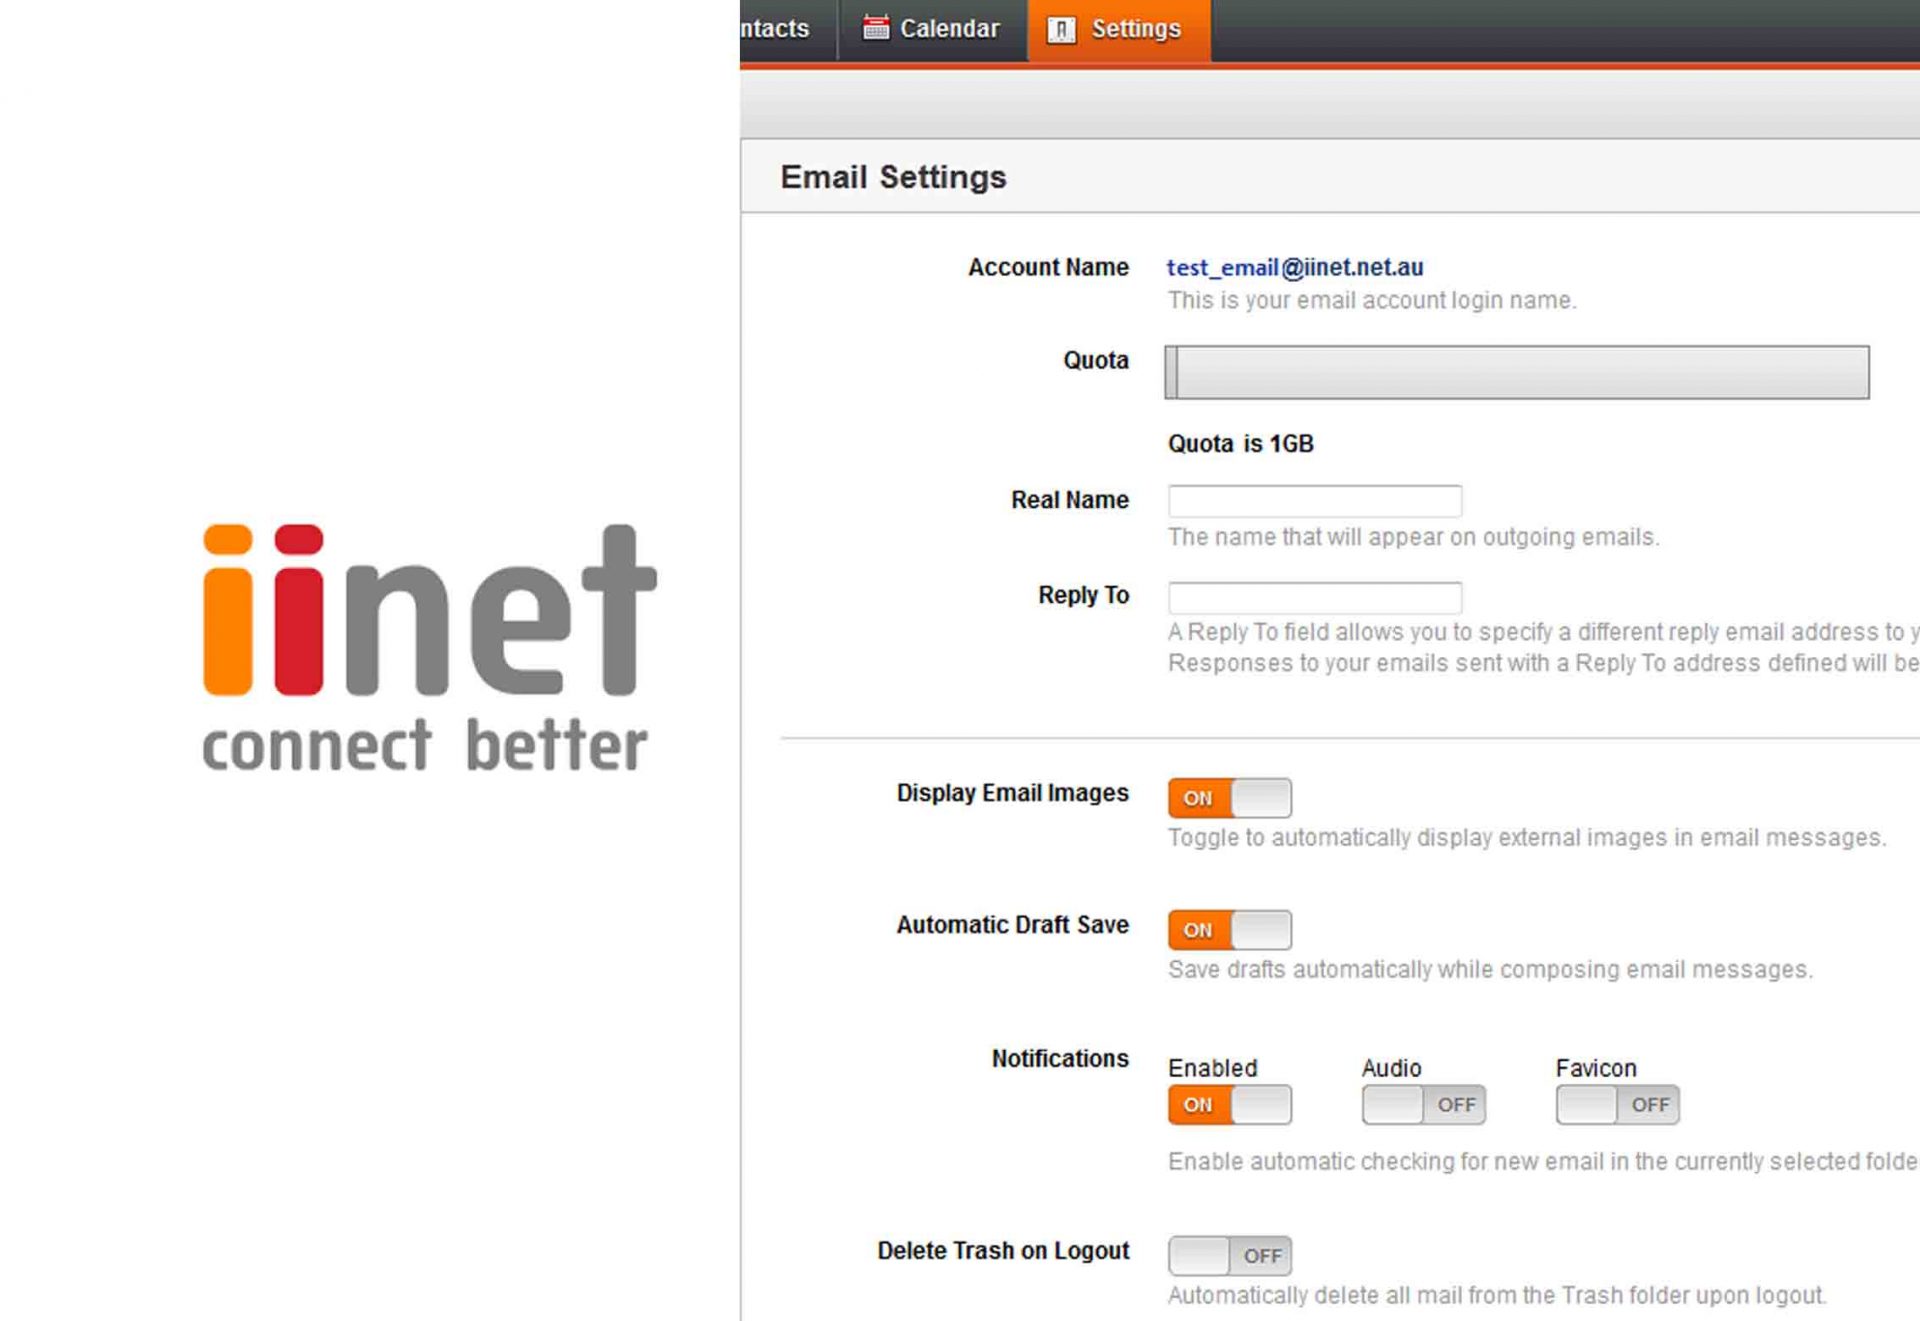 webmail earthnet net